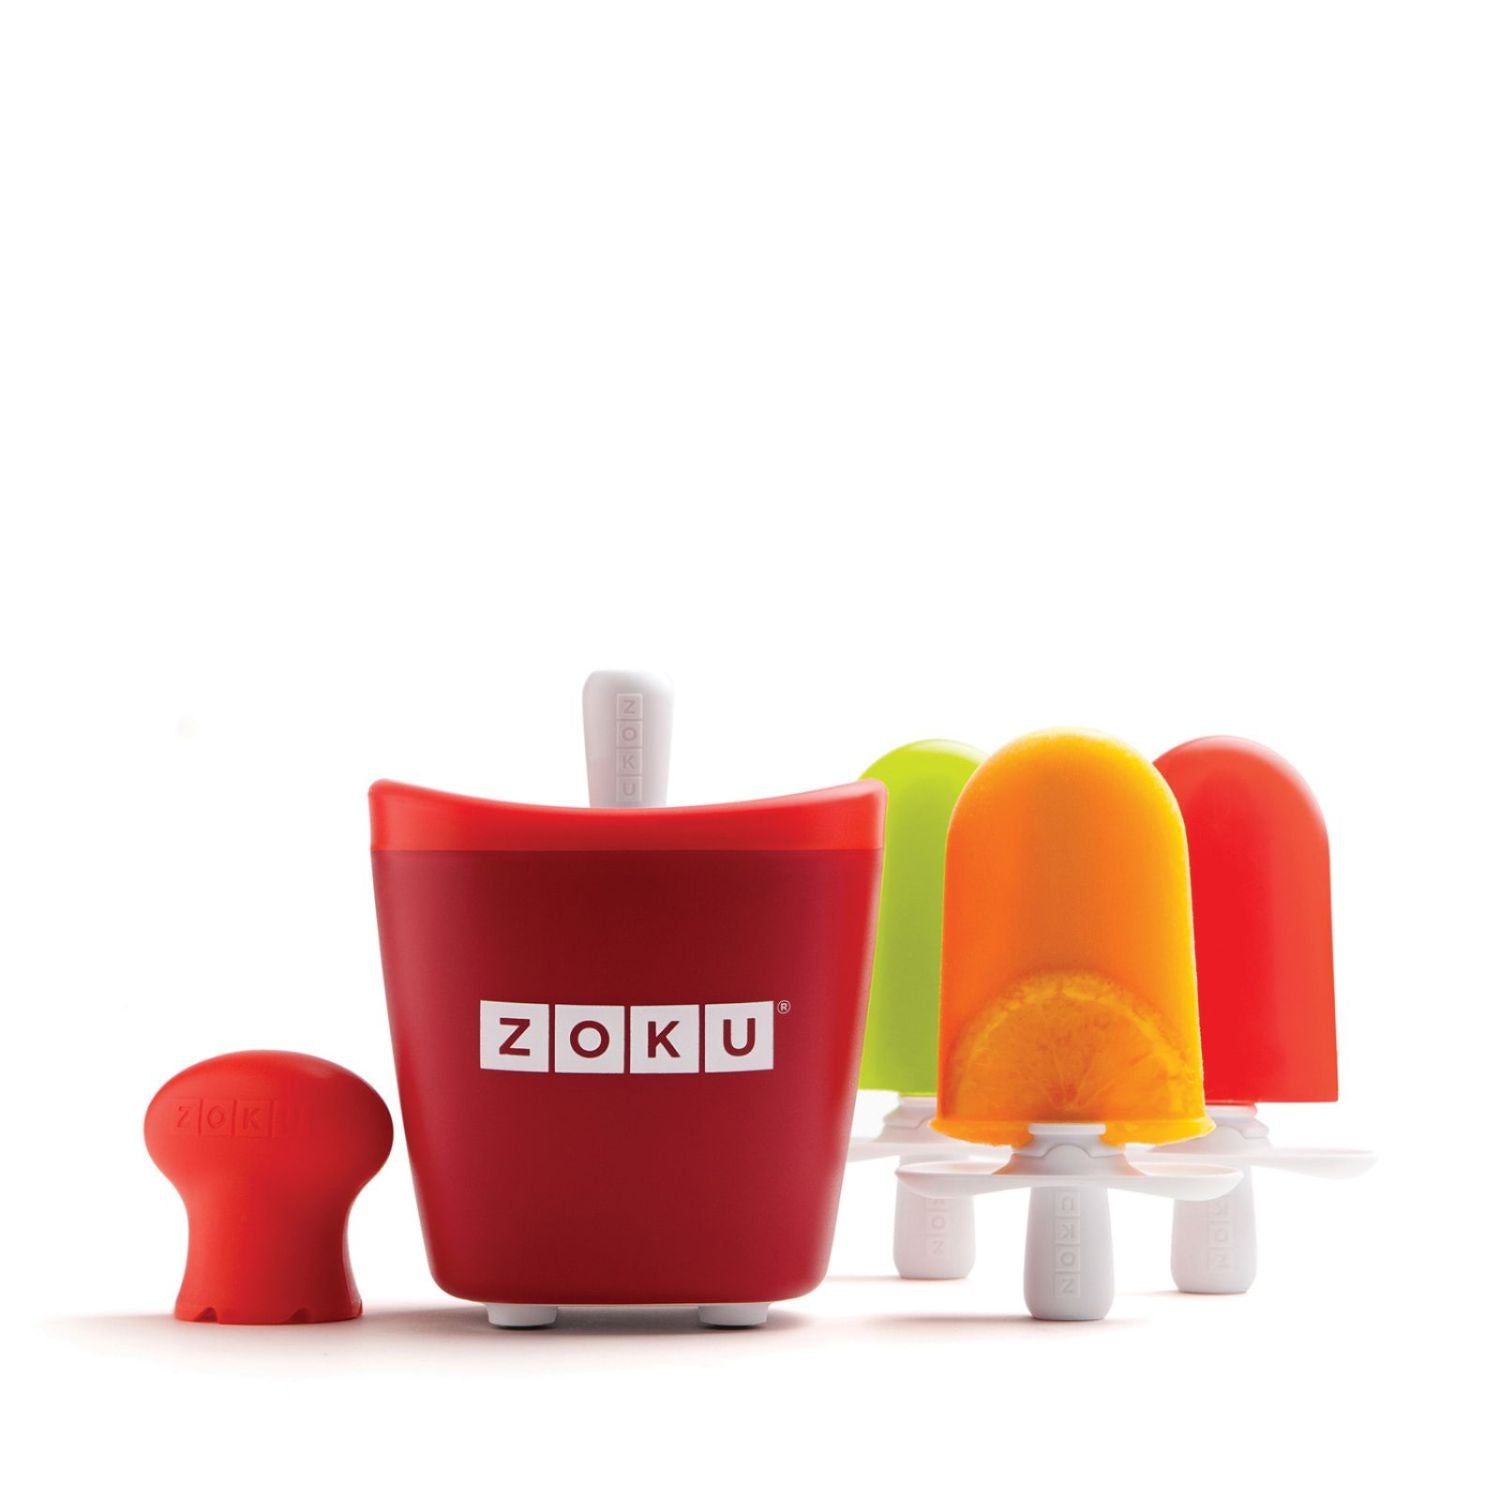 Zoku Single Quick Pop Maker, Red, 60ml Per Pop